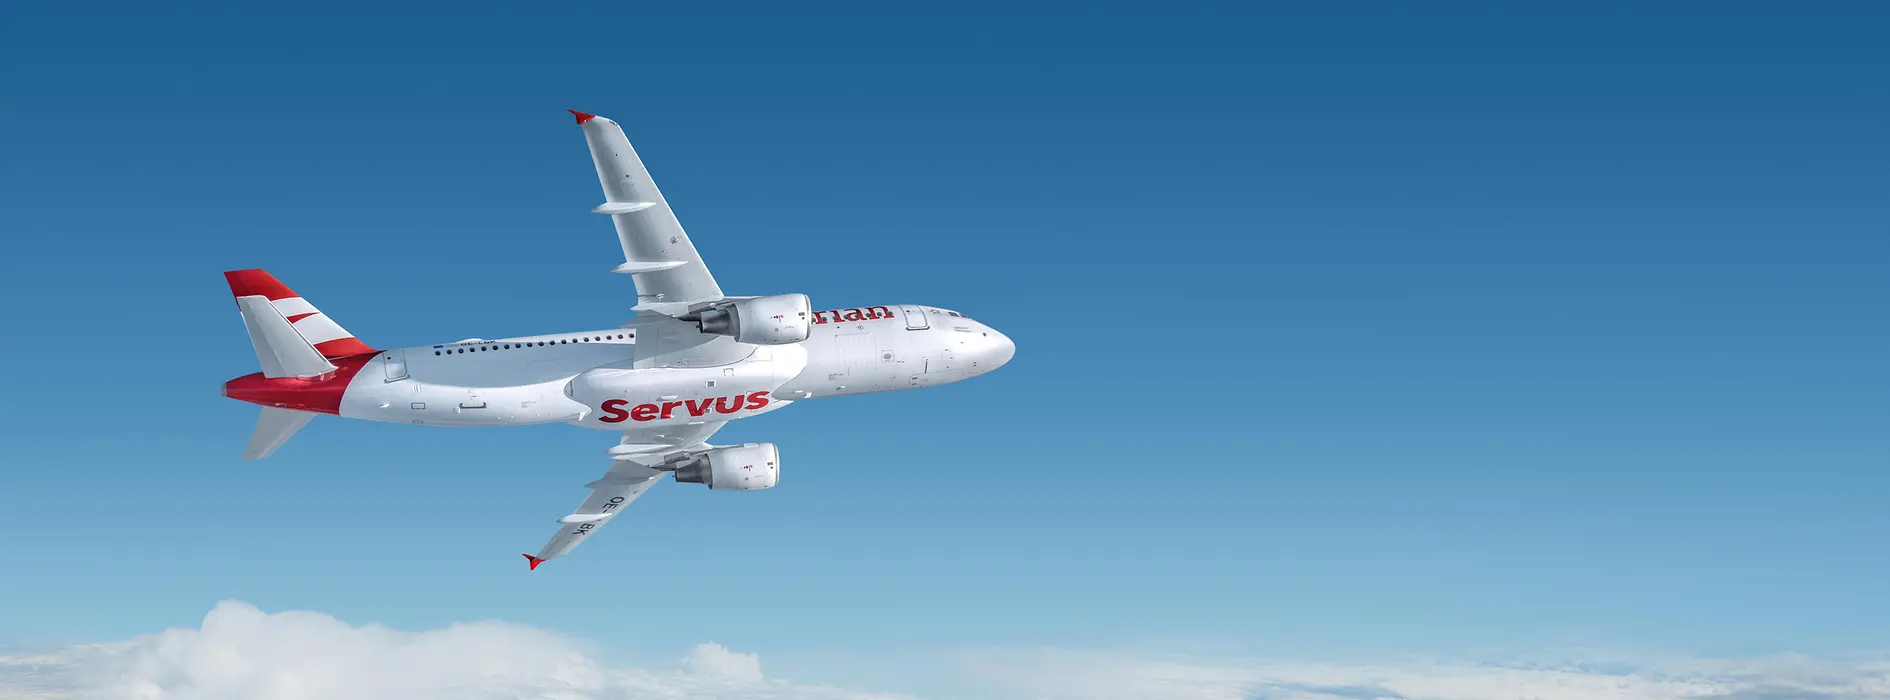 Avion blanc d’Austrian Airlines à l’inscription rouge « Servus » volant au-dessus des nuages